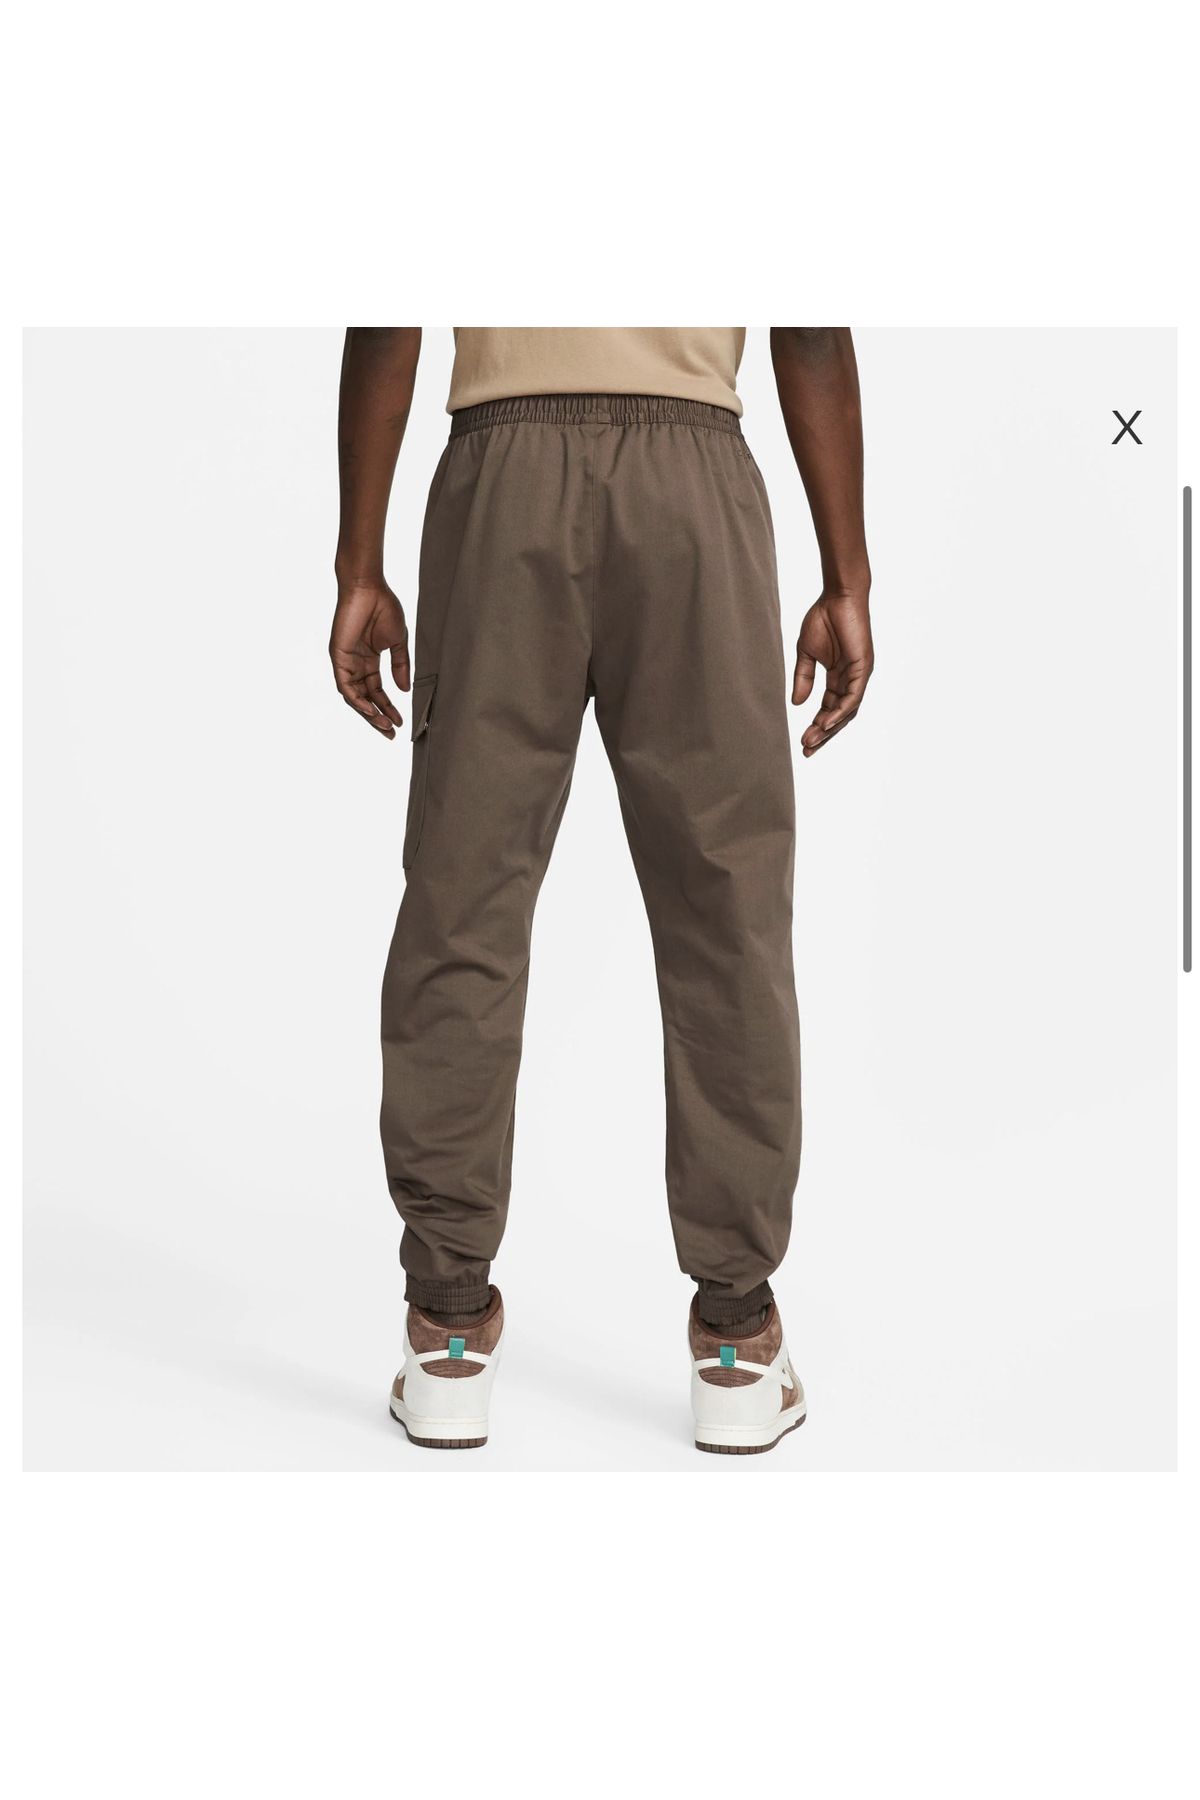 Nike Sportswear Men's Brown Sweatpants - Trendyol